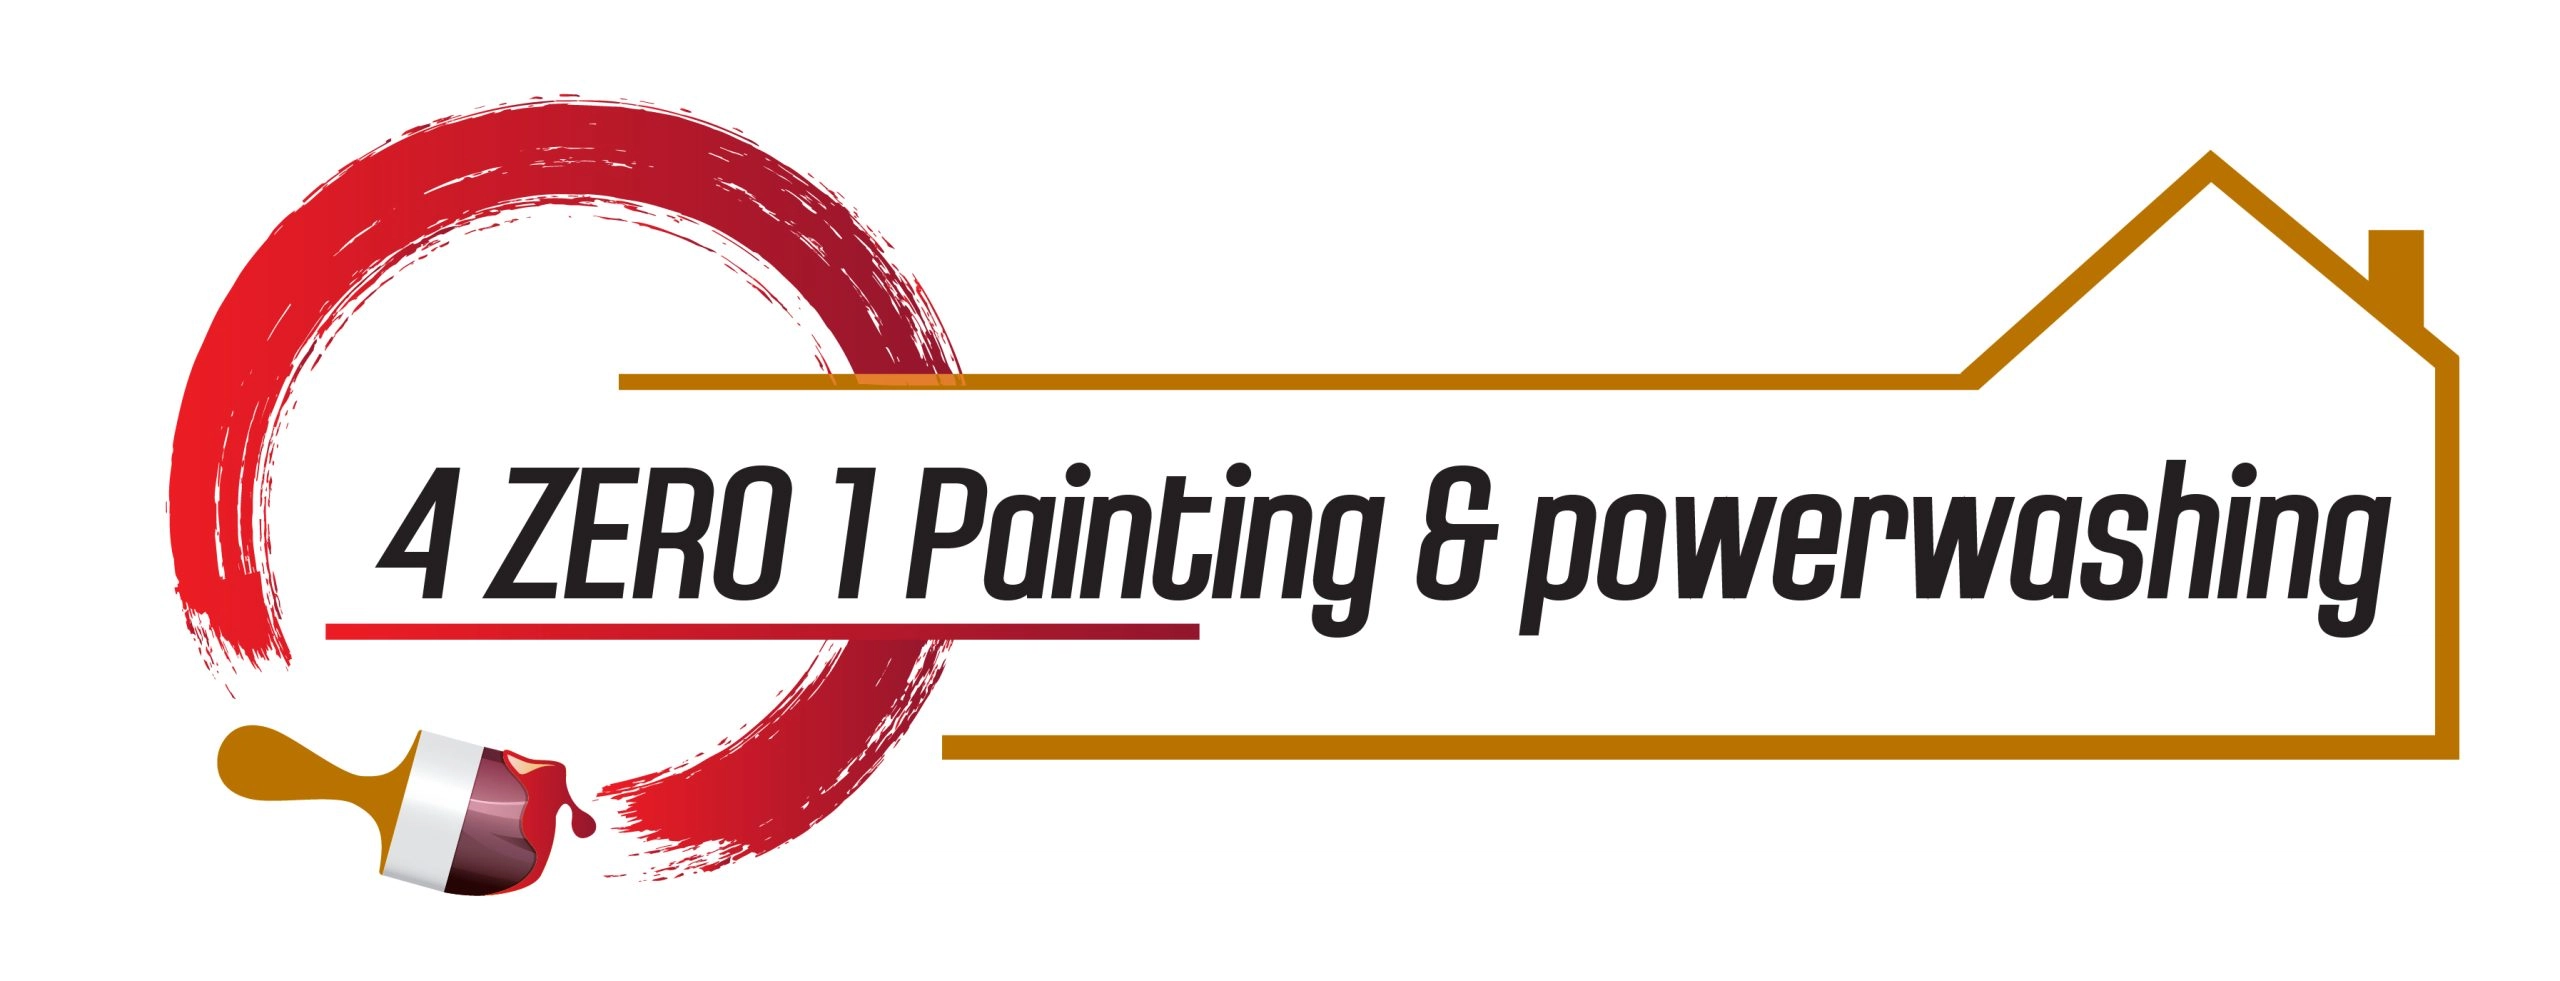 4zero1 Painting & Powerwashing Logo